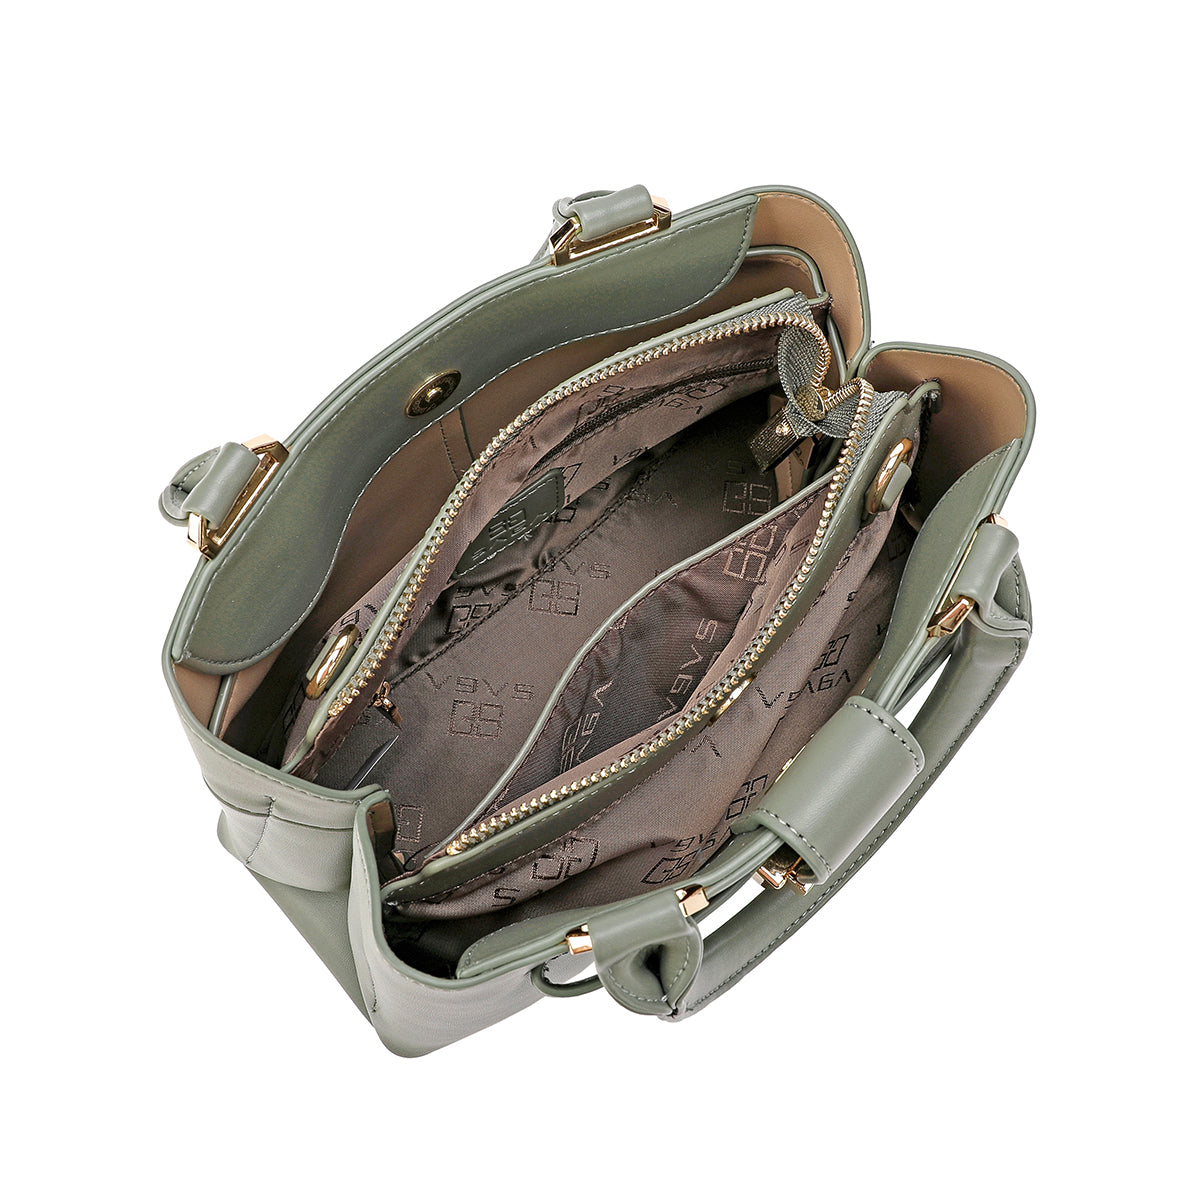 حقيبة يد مع حامل كتف حزام قابل للتعديل عرض 26سم بلون أخضر أو أسود